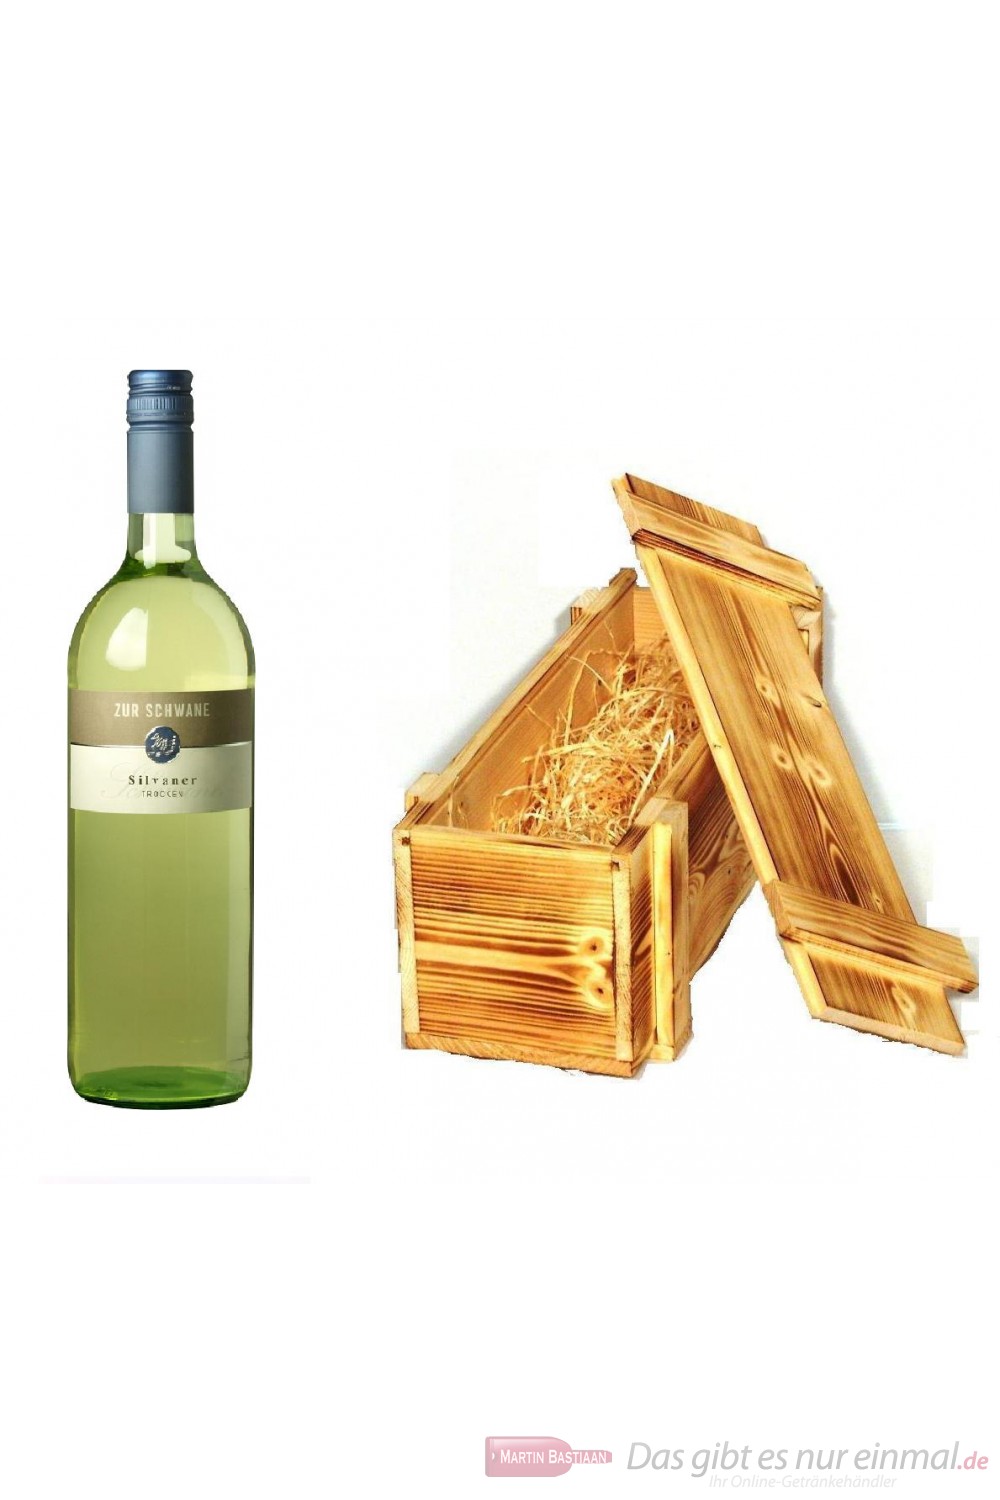 Zur Schwane Silvaner Qba trocken Weißwein 2009 12,5% 1,0l Flasche in Holzkiste geflammt